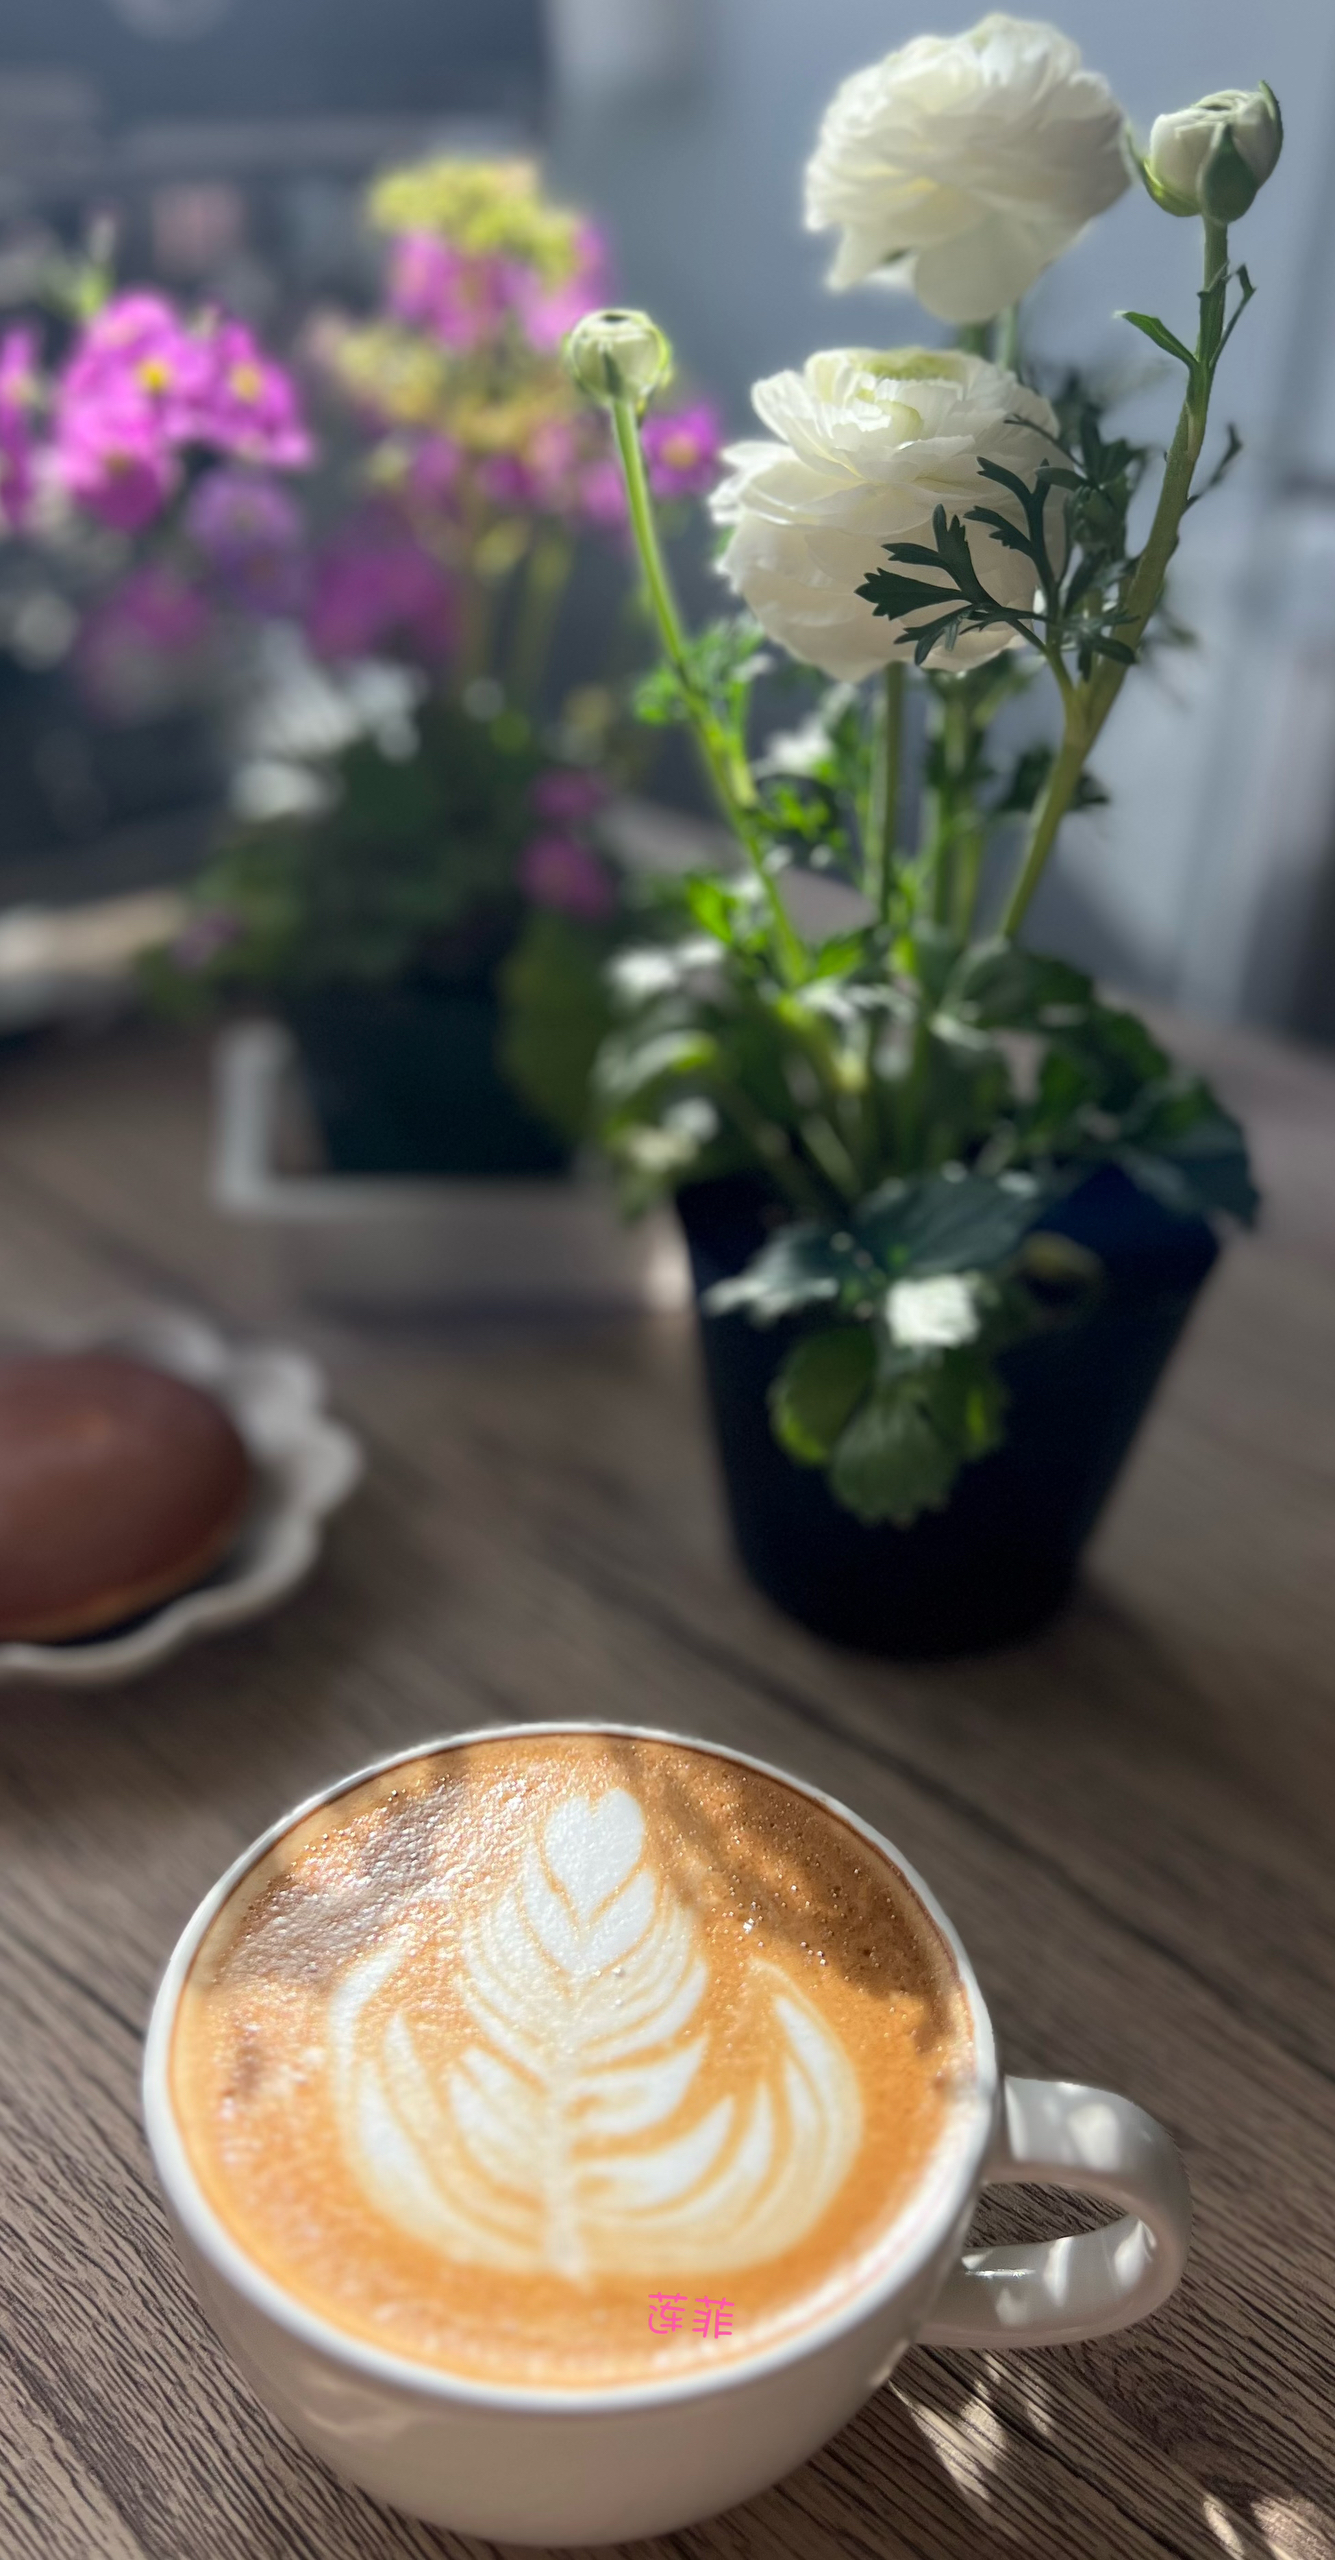 咖啡拉花☕️日记